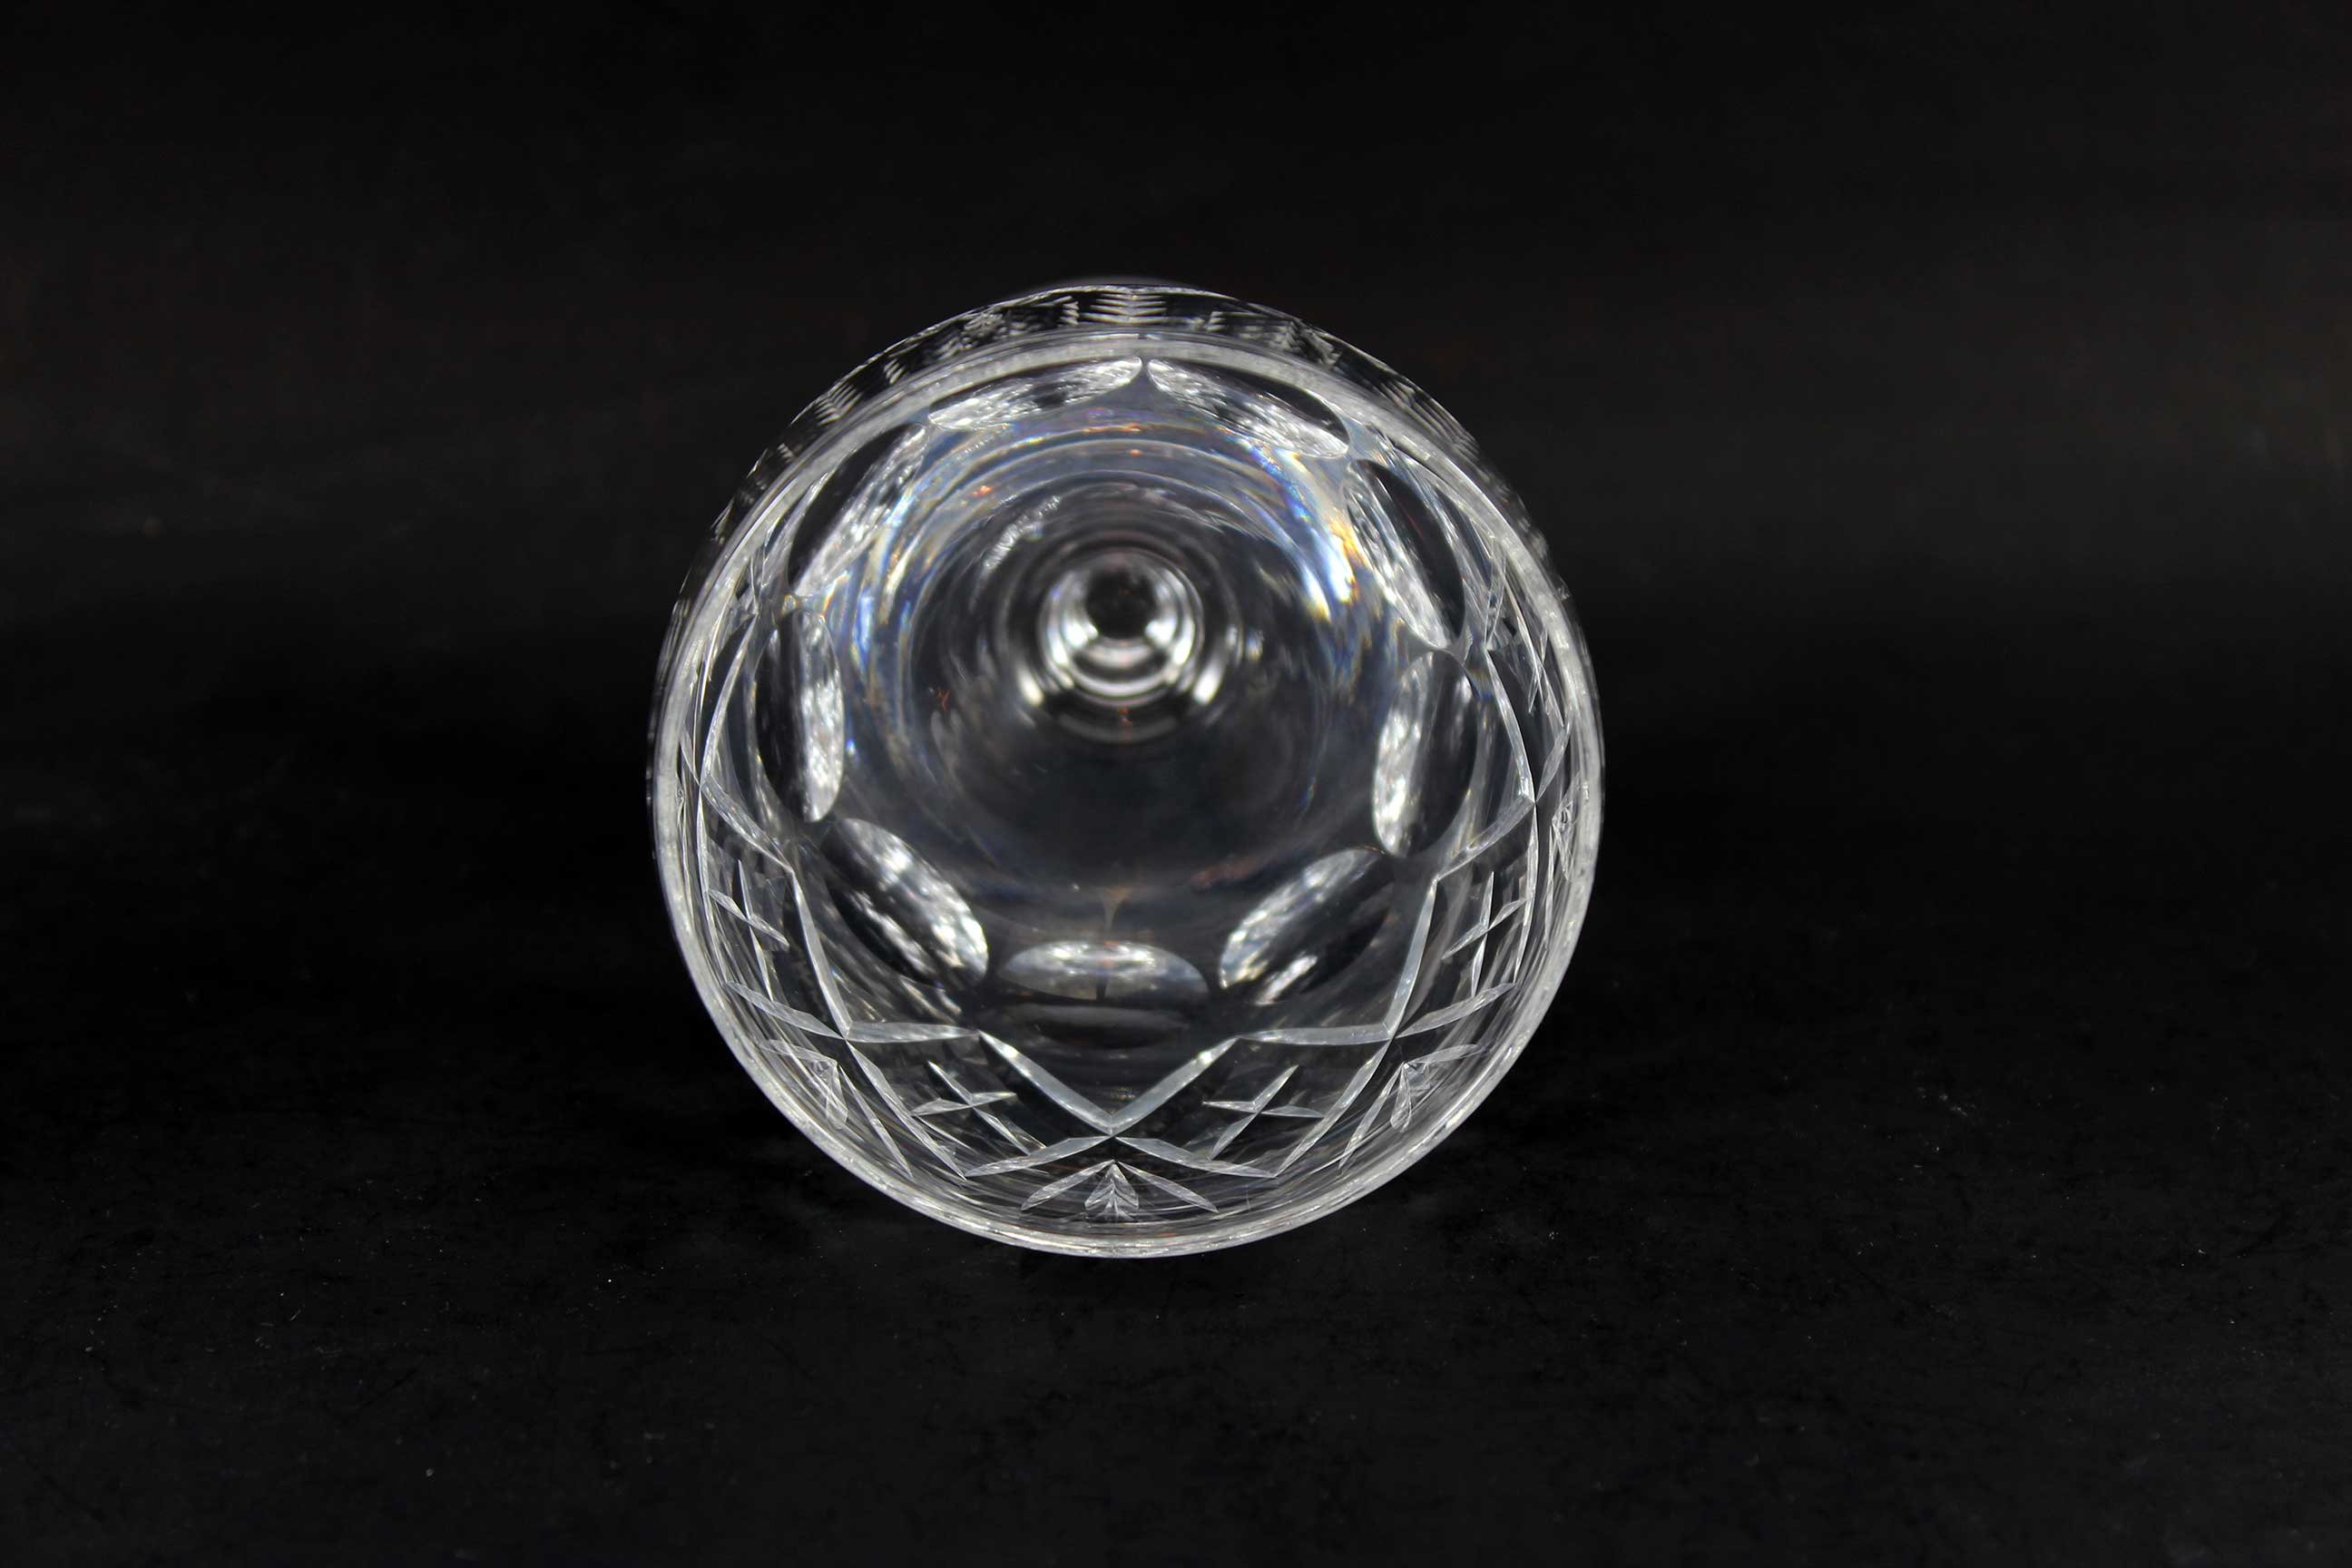 Webb Corbett Crystal, Georgian Pattern, Water Goblets